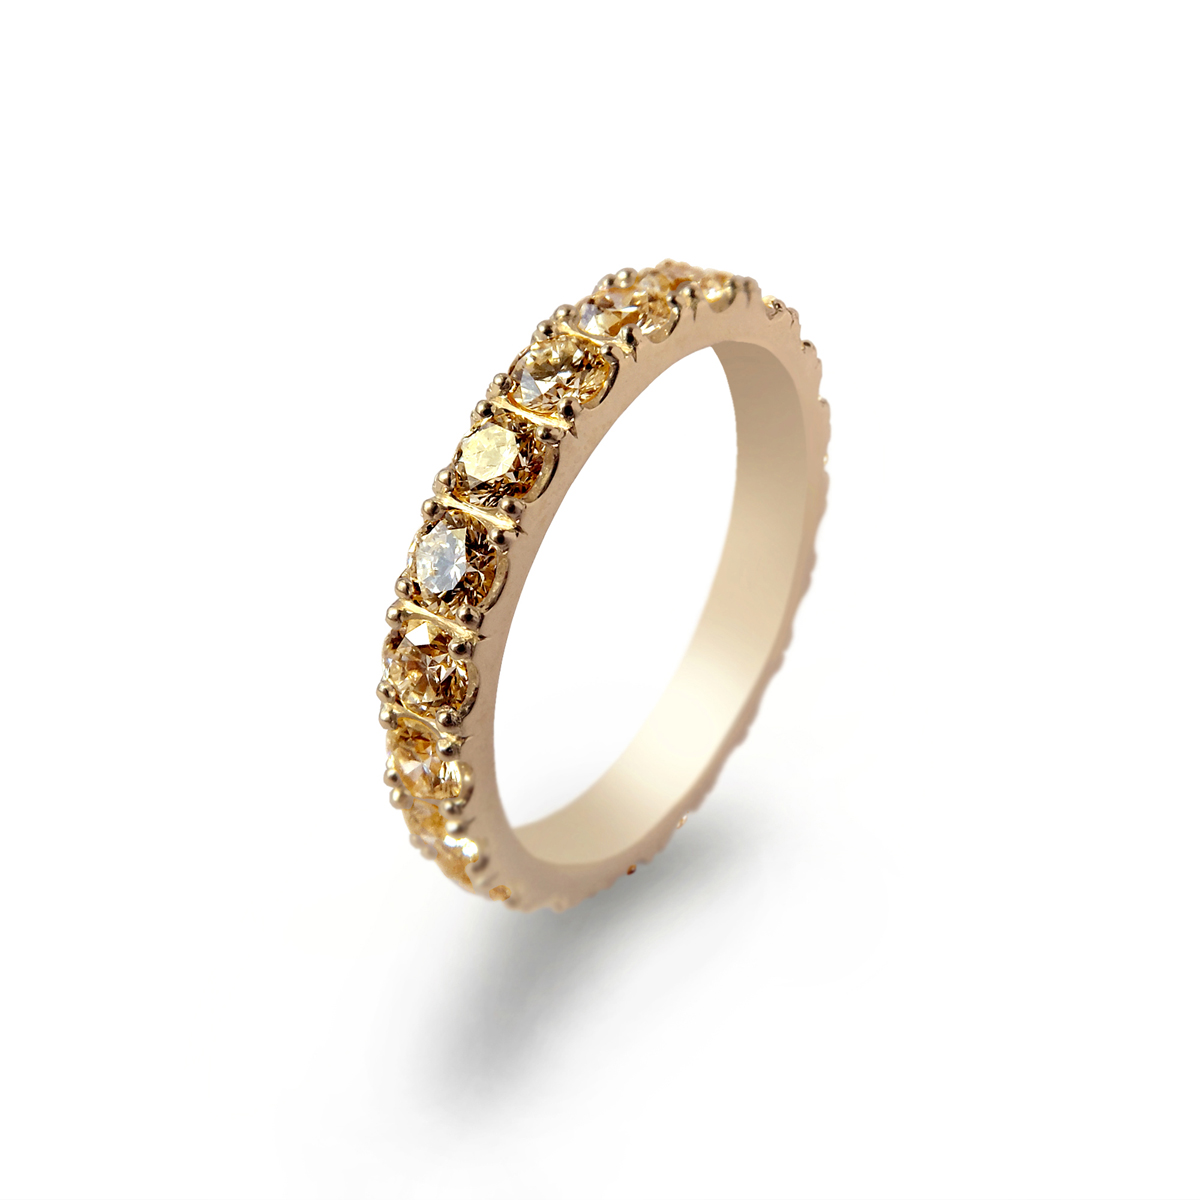 Eternity pierścionek obrączkowy z brylantami fancy brown koniakowymi łącznie 1ct - Marcin Czop Autorska Pracownia Biżuterii